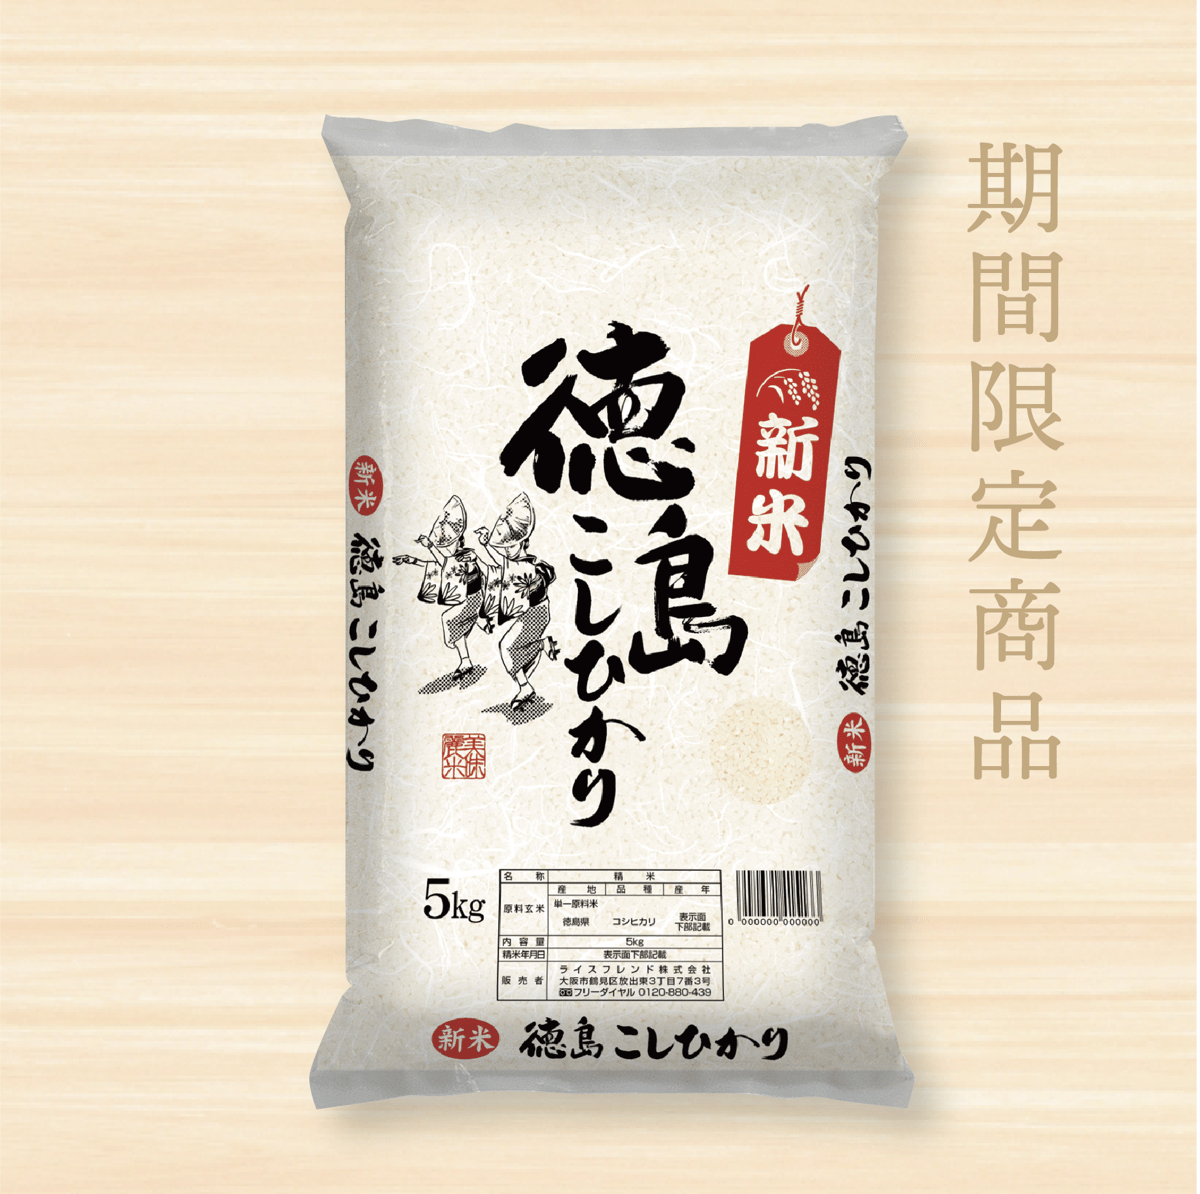 ✨無洗米 はえぬき✨令和5年産✨25kg✨ - 米・雑穀・粉類